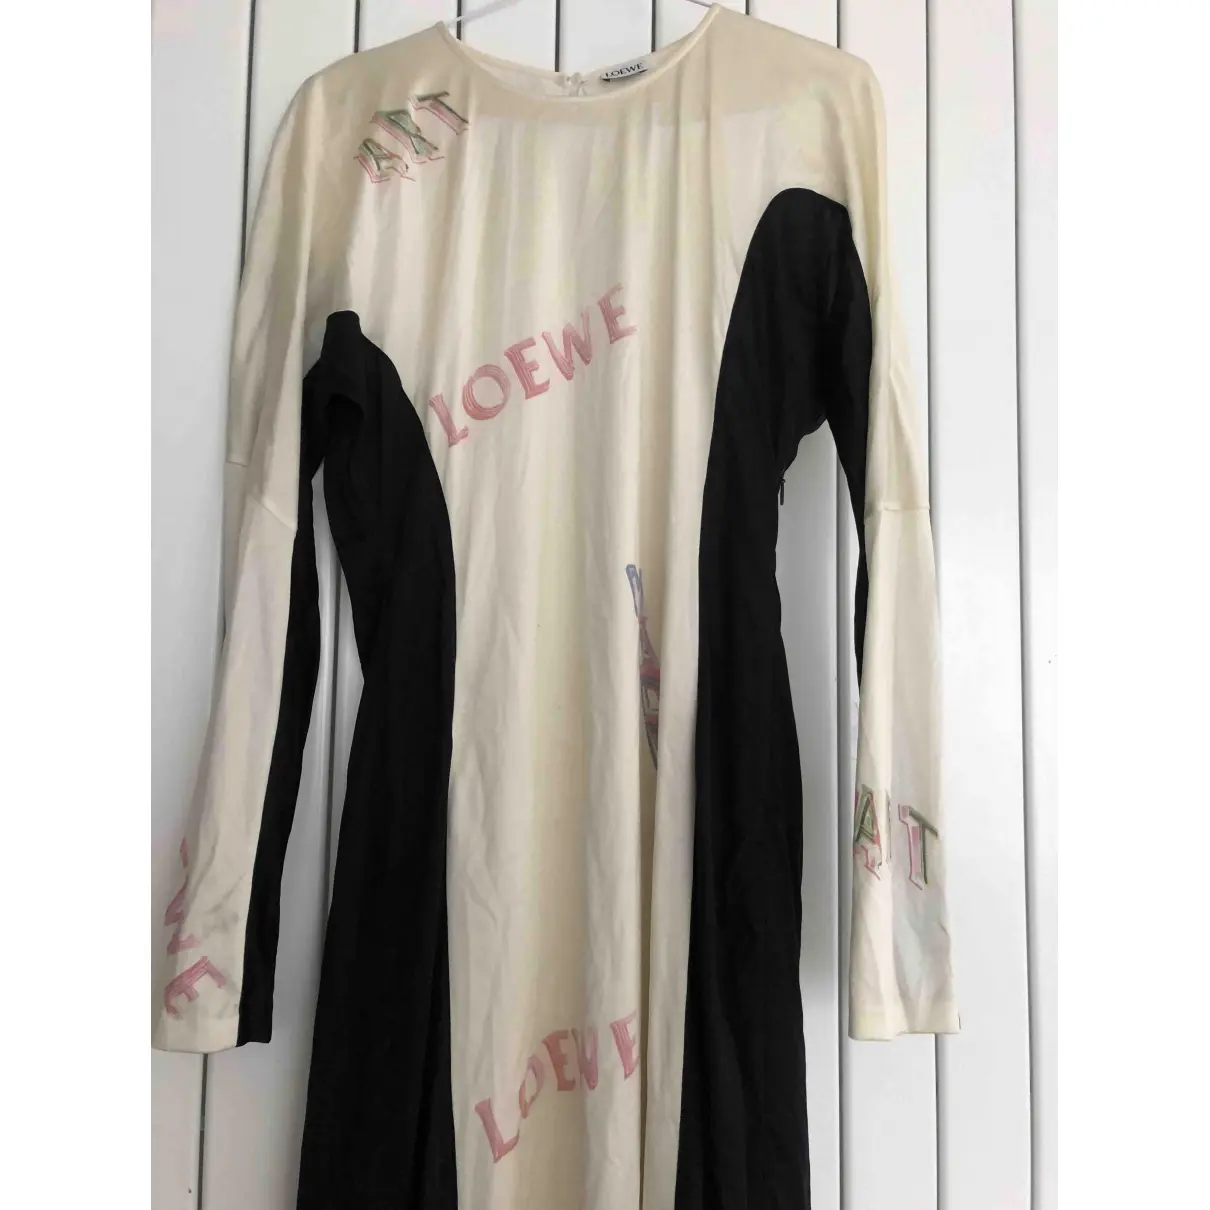 Buy Loewe Mid-length dress online